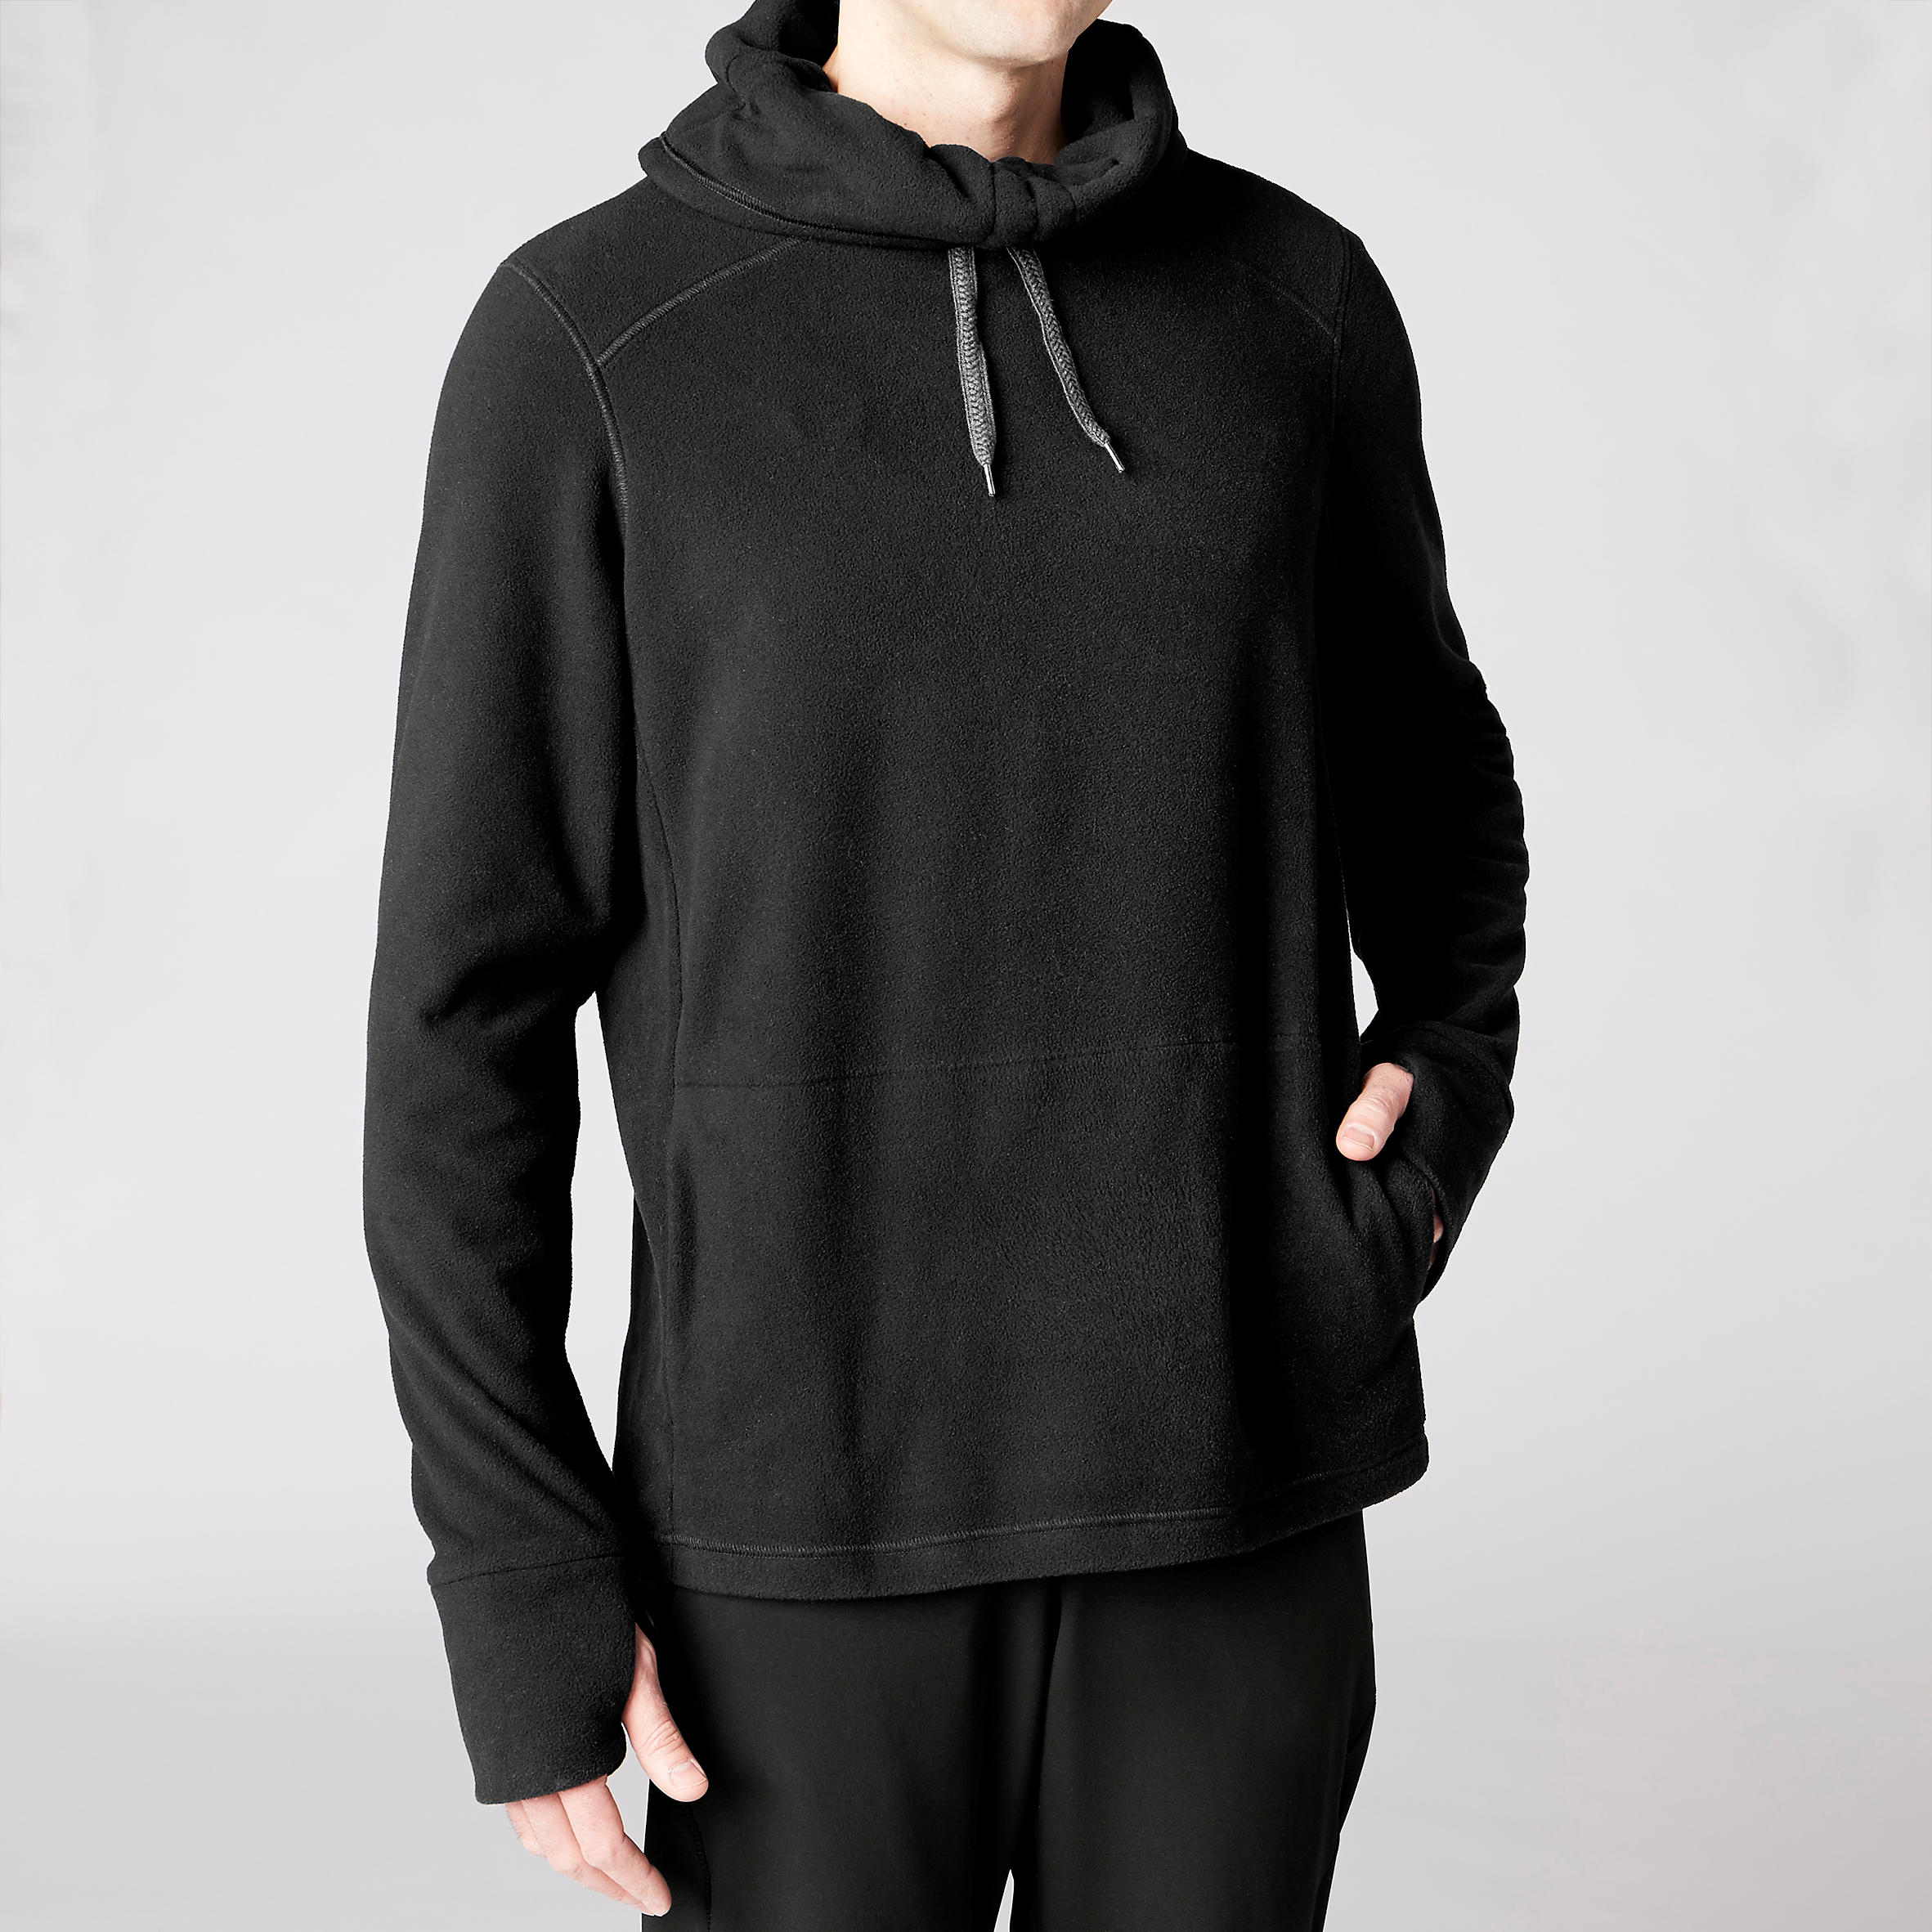 KIMJALY Men's Fleece Yoga Sweatshirt - Black